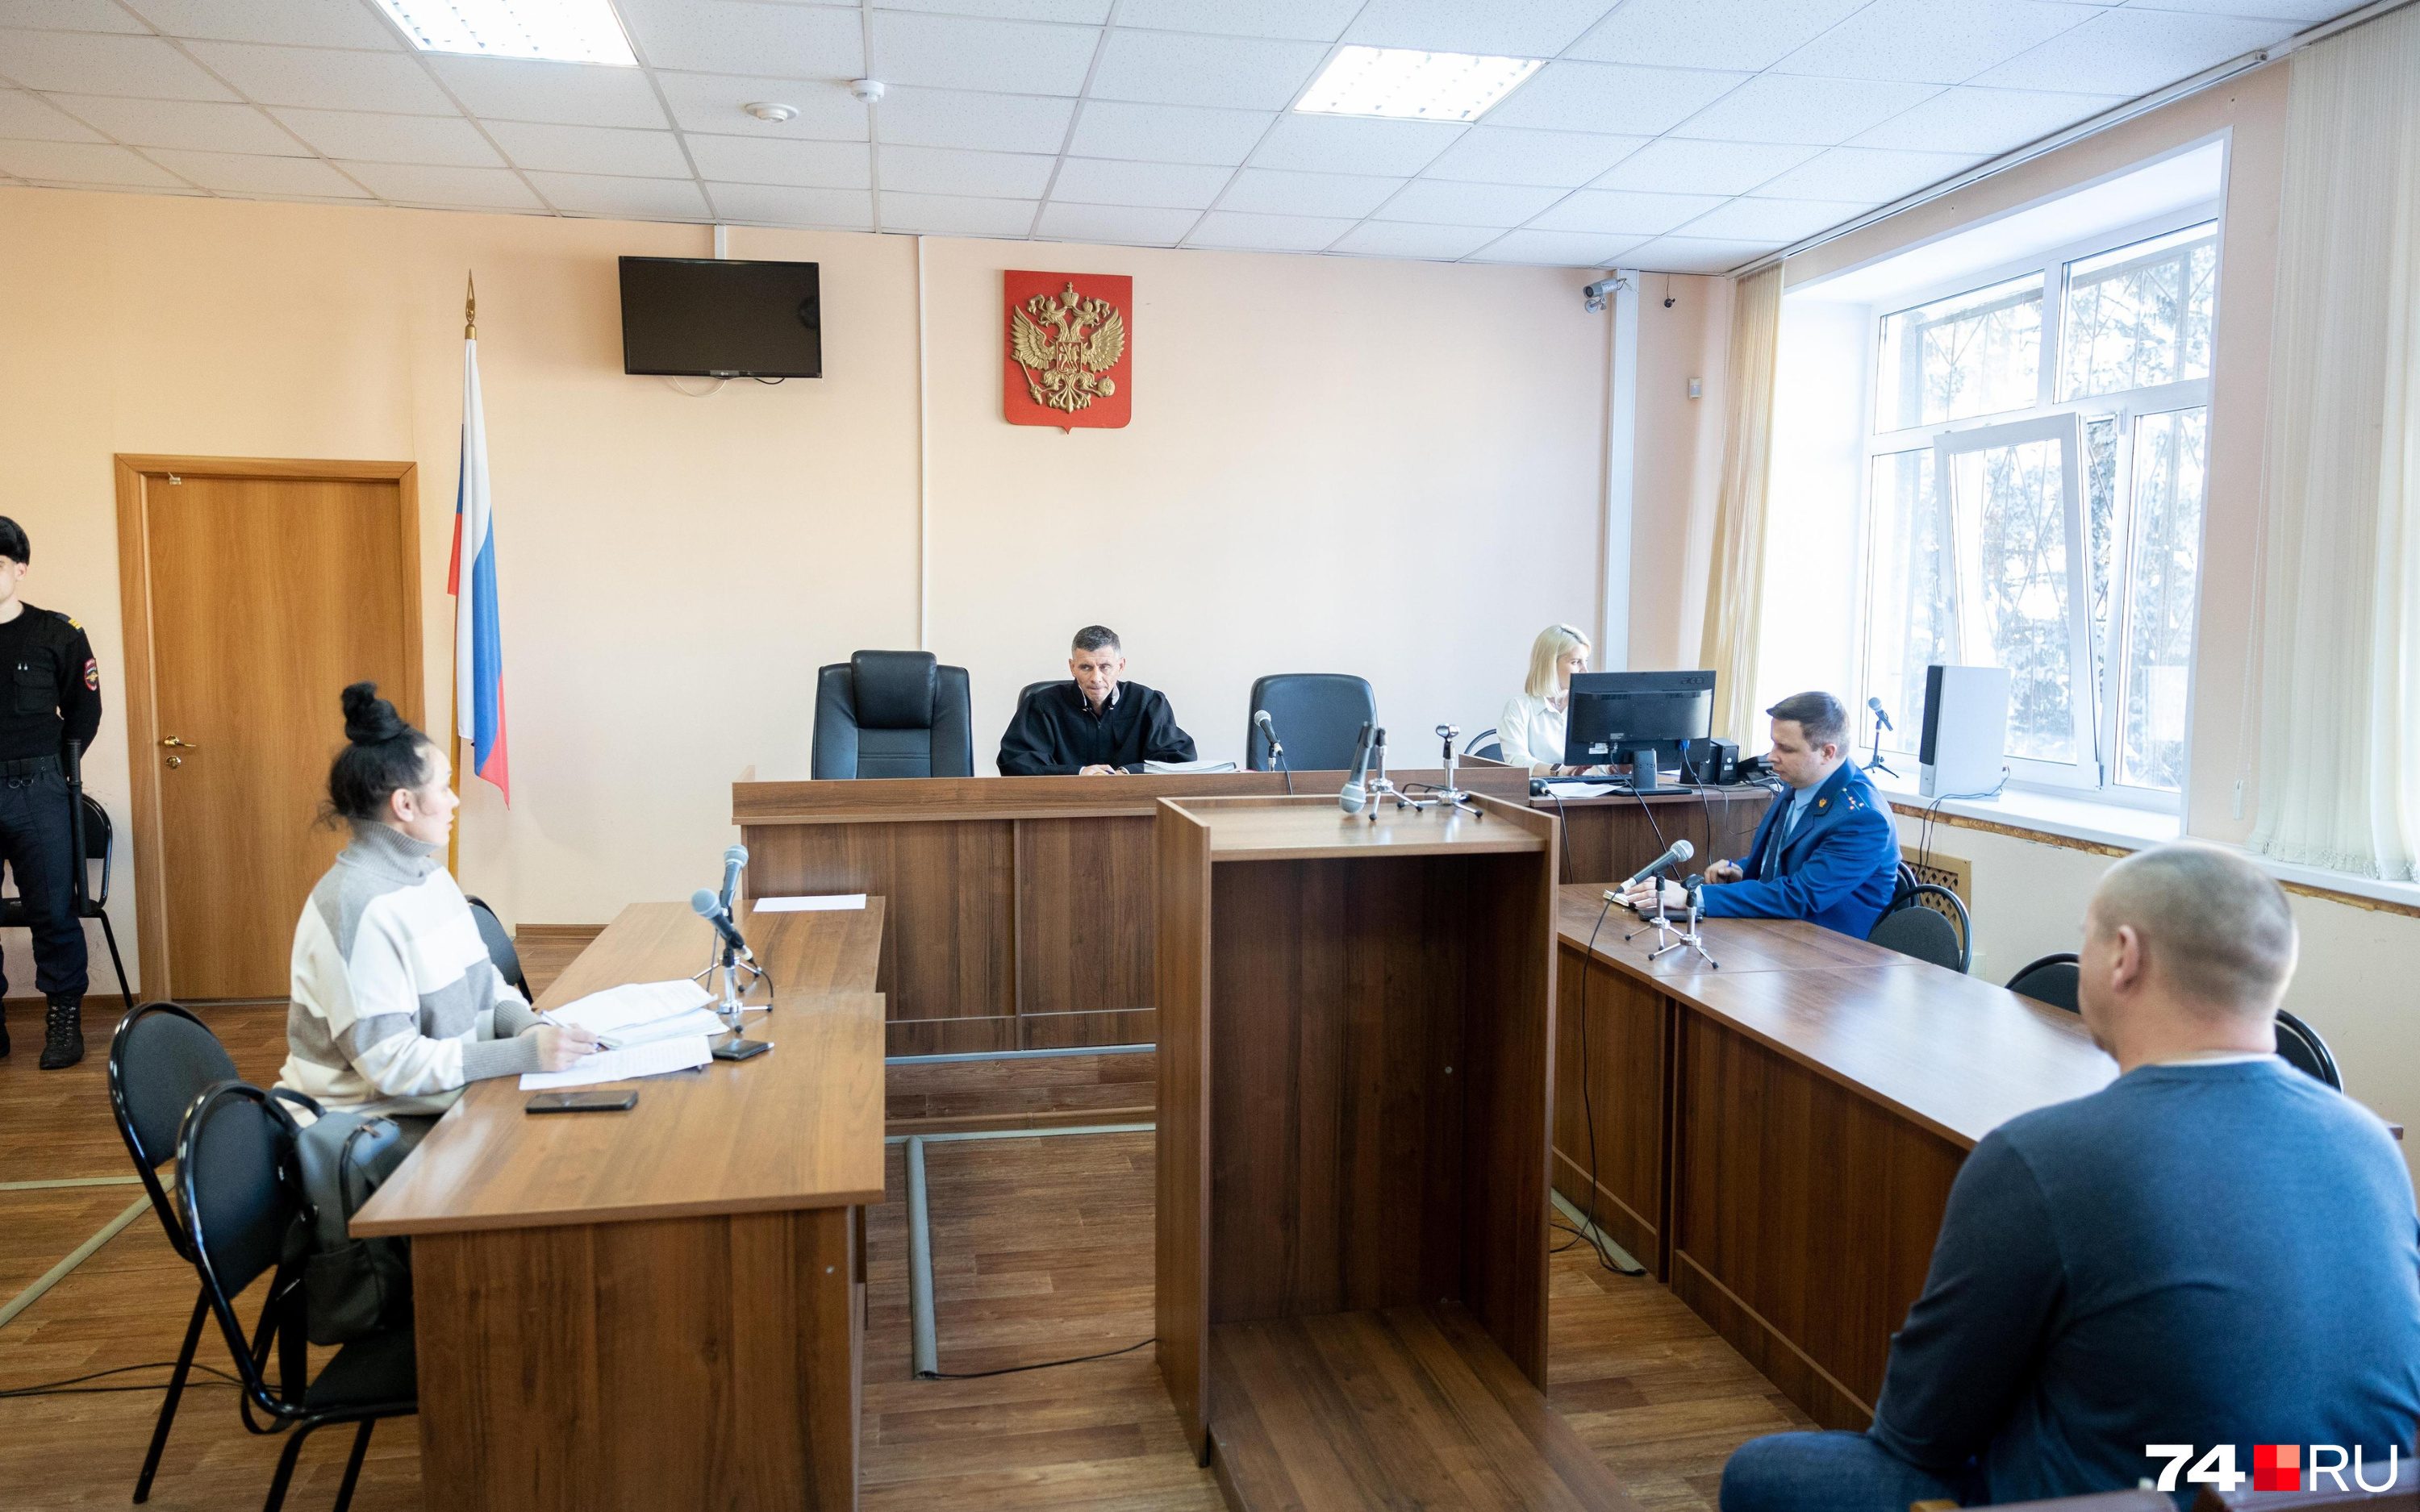 Супруга обвиняемого во взятках топ-менеджера СЕЗ Чумакова вступилась за мужа в суде